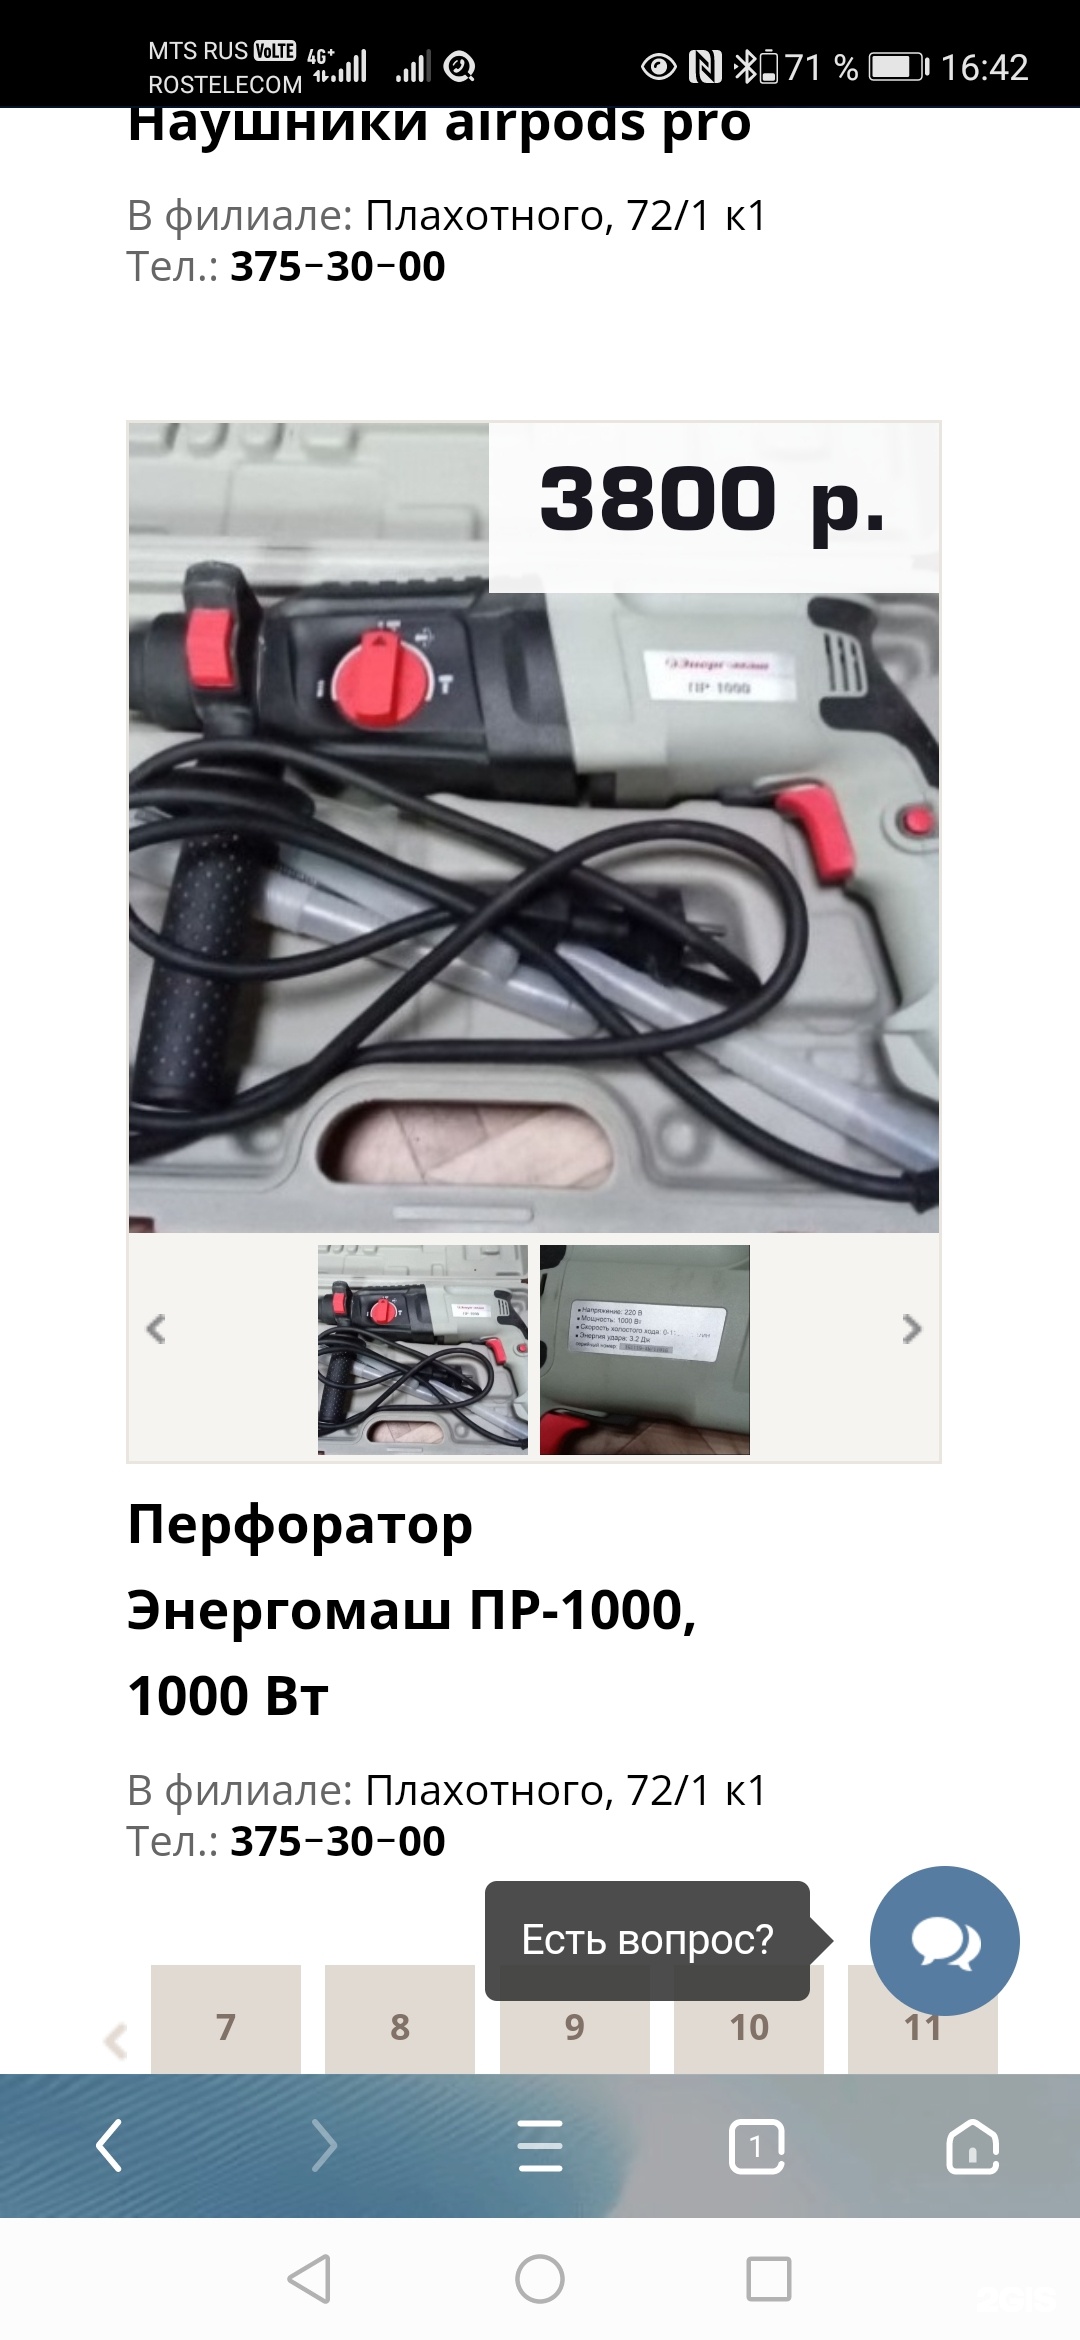 Сдать Ноутбук В Ломбард Цена В Новосибирске